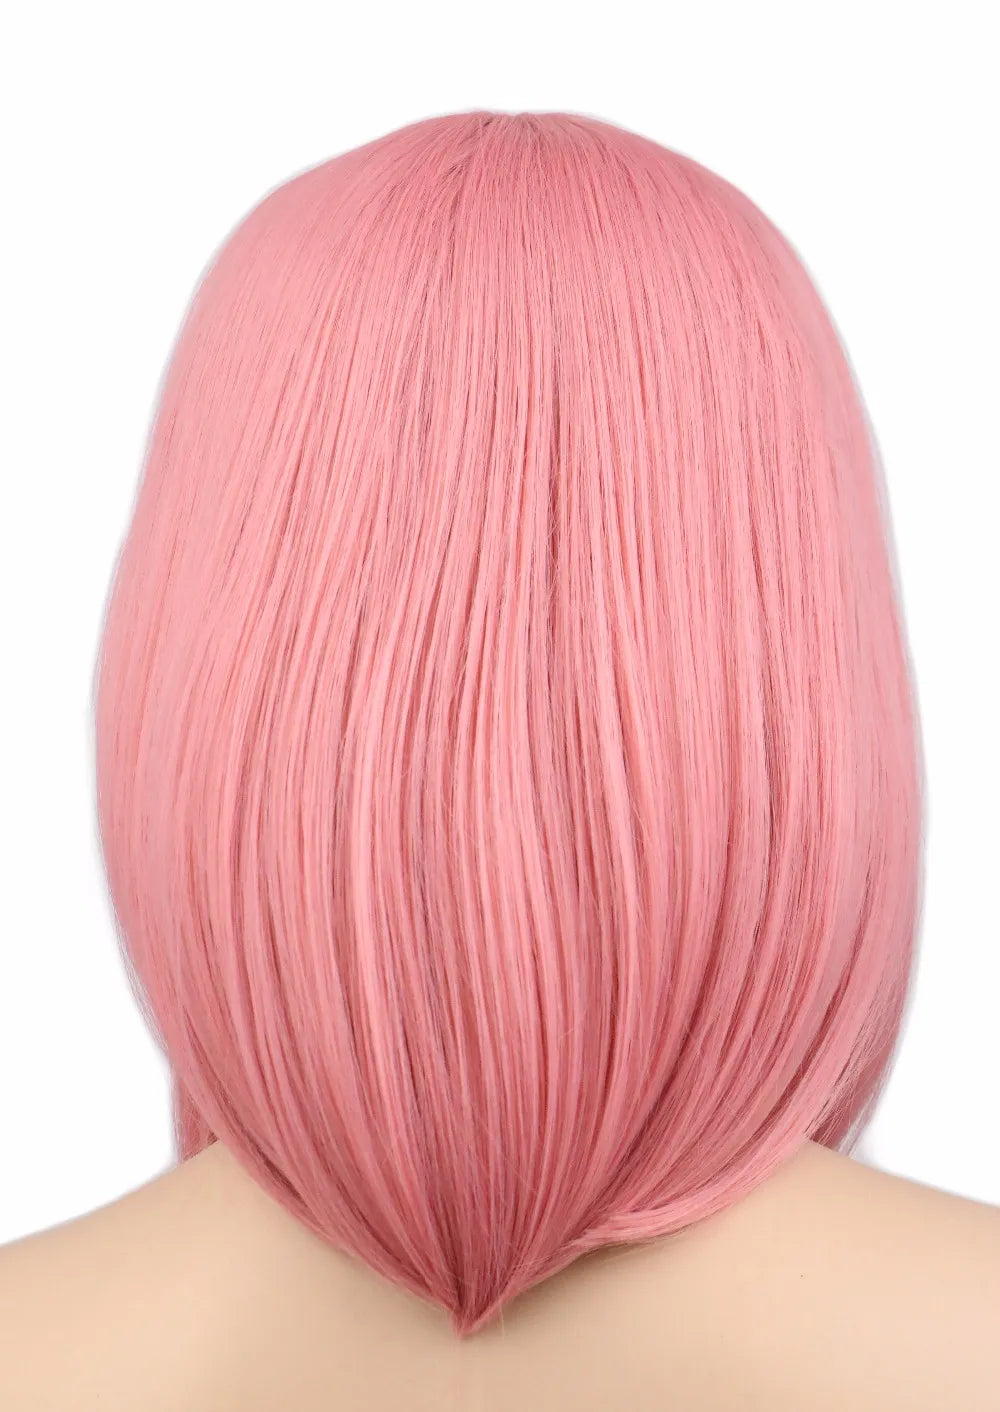 Wig Queen Tory (Pink)